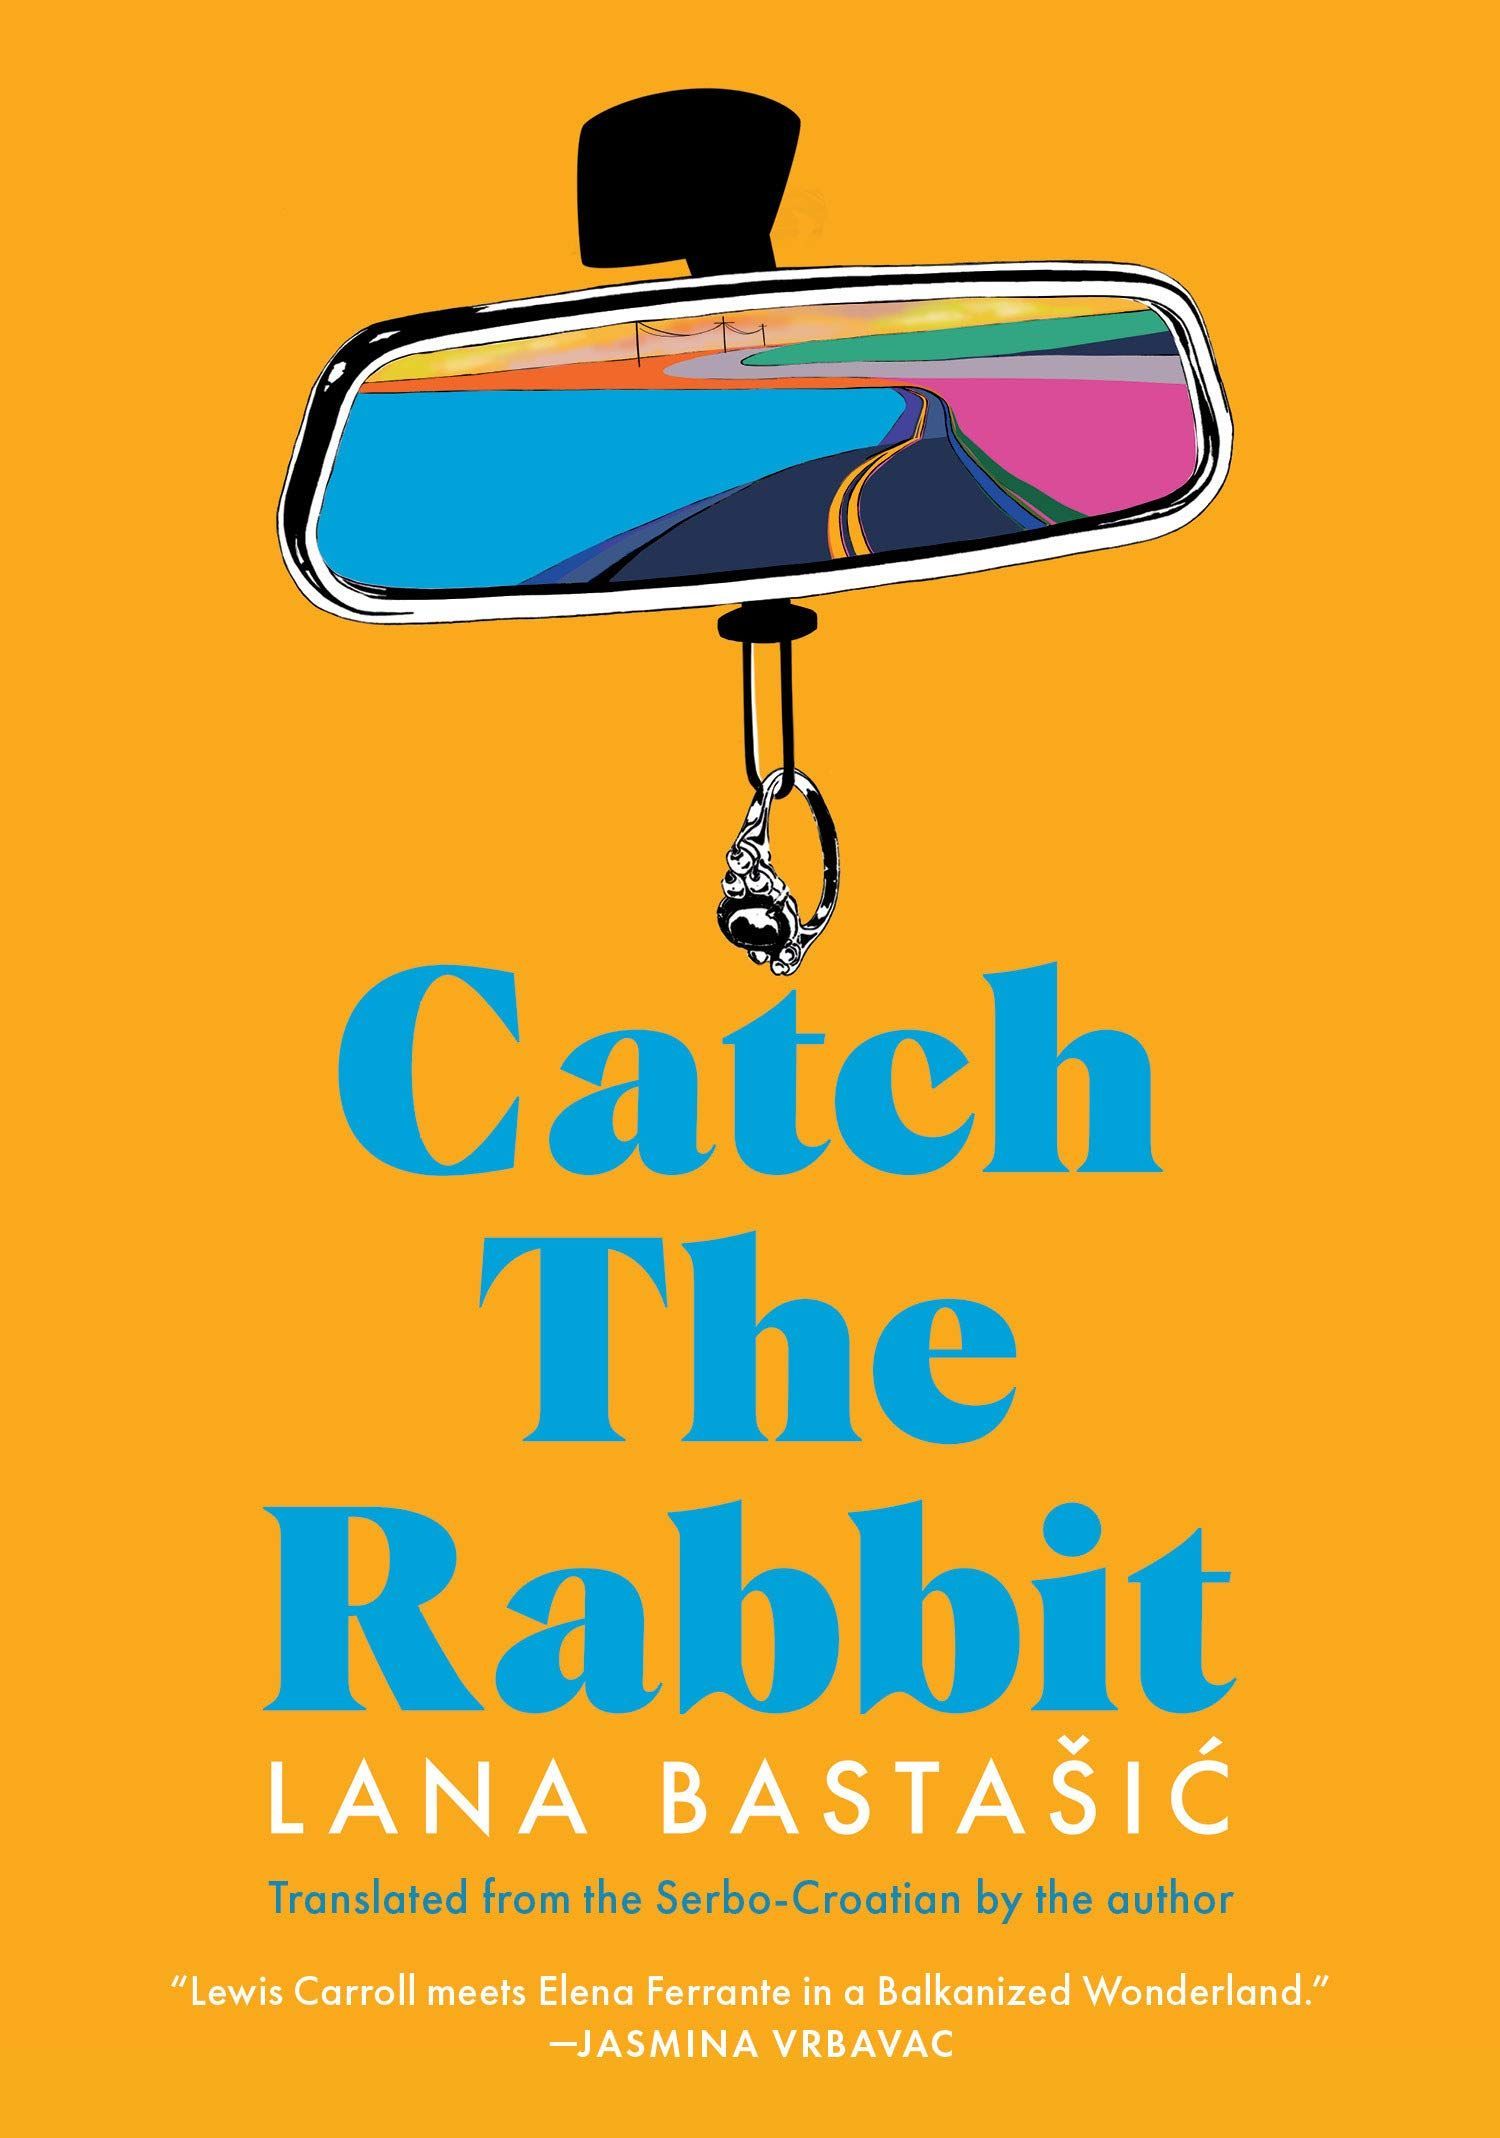 A Heroine’s Journey: On Lana Bastašić’s “Catch the Rabbit”